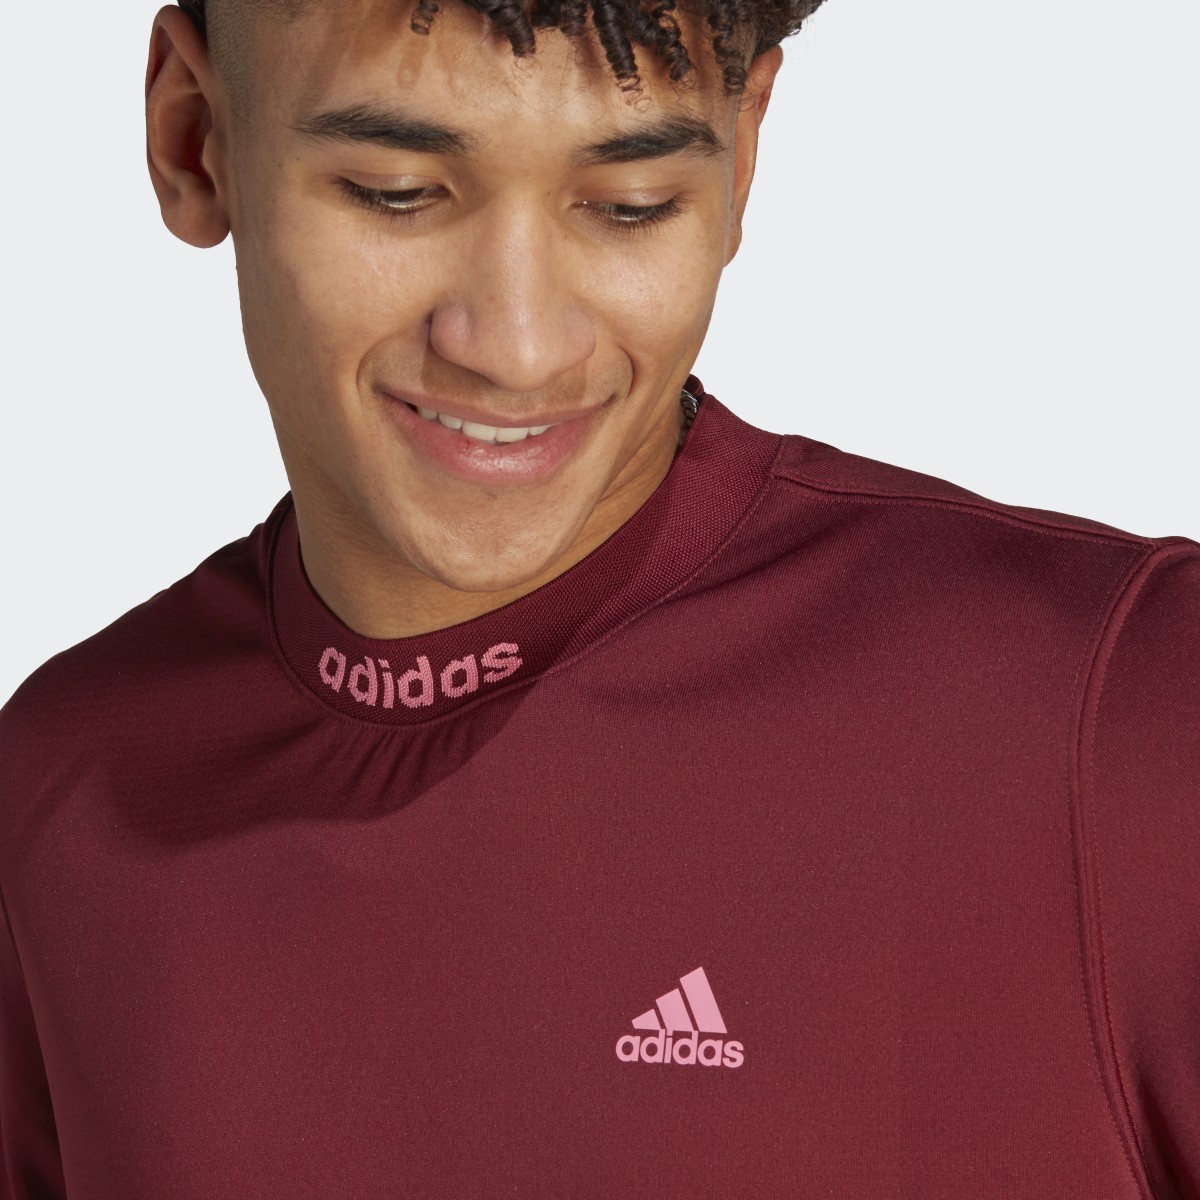 Adidas Camiseta Mesh-Back. 6